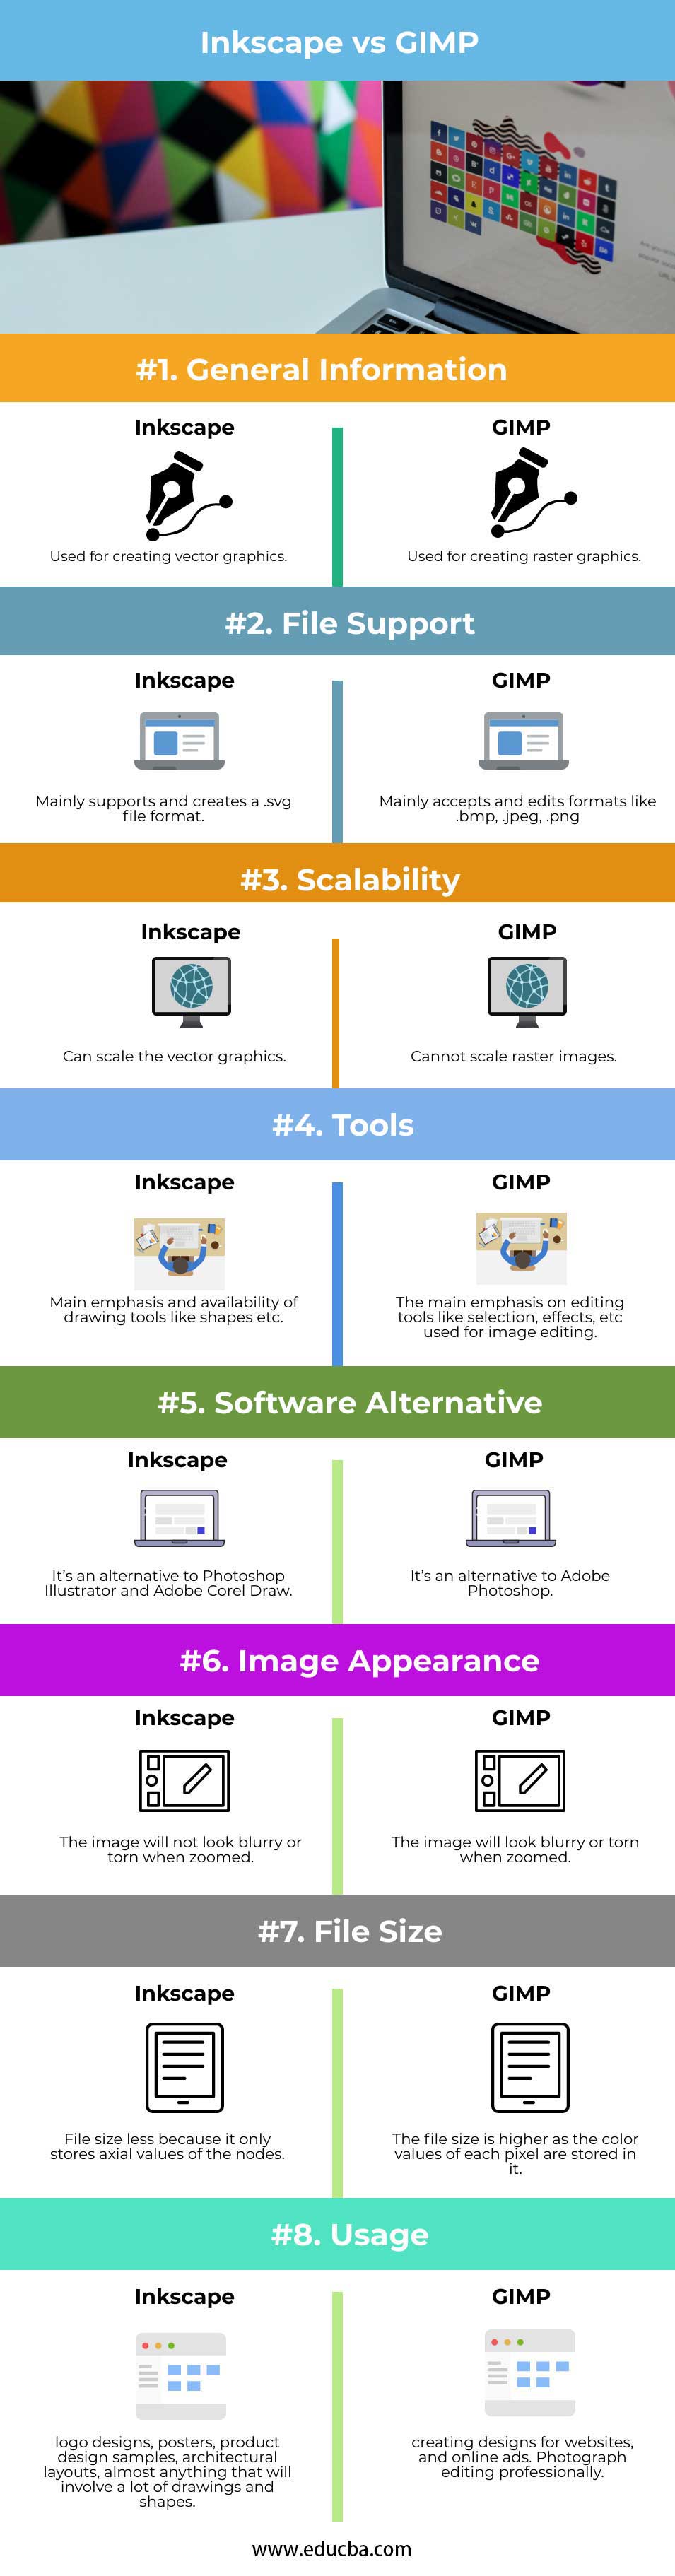 Inkscape vs GIMP info